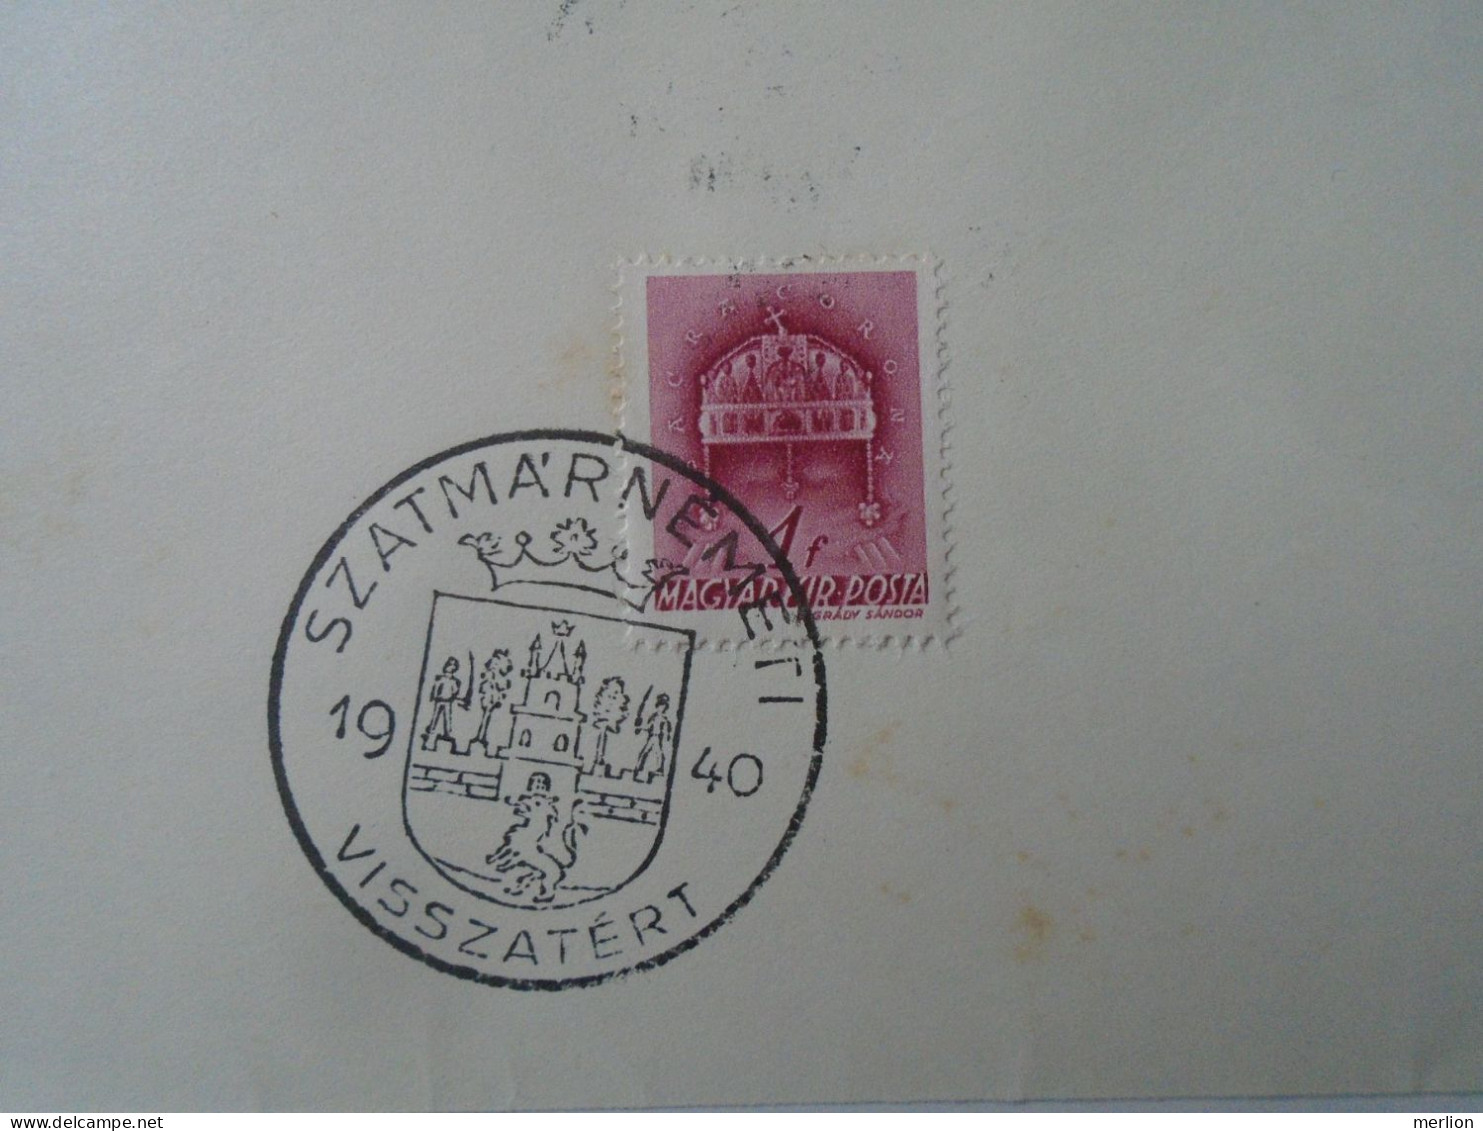 ZA451.22 Hungary-  Nagyszalonta, Szatmárnémeti, Beszterce, Nagybánya  Visszatért -Commemorative Postmark 1940 - Postmark Collection